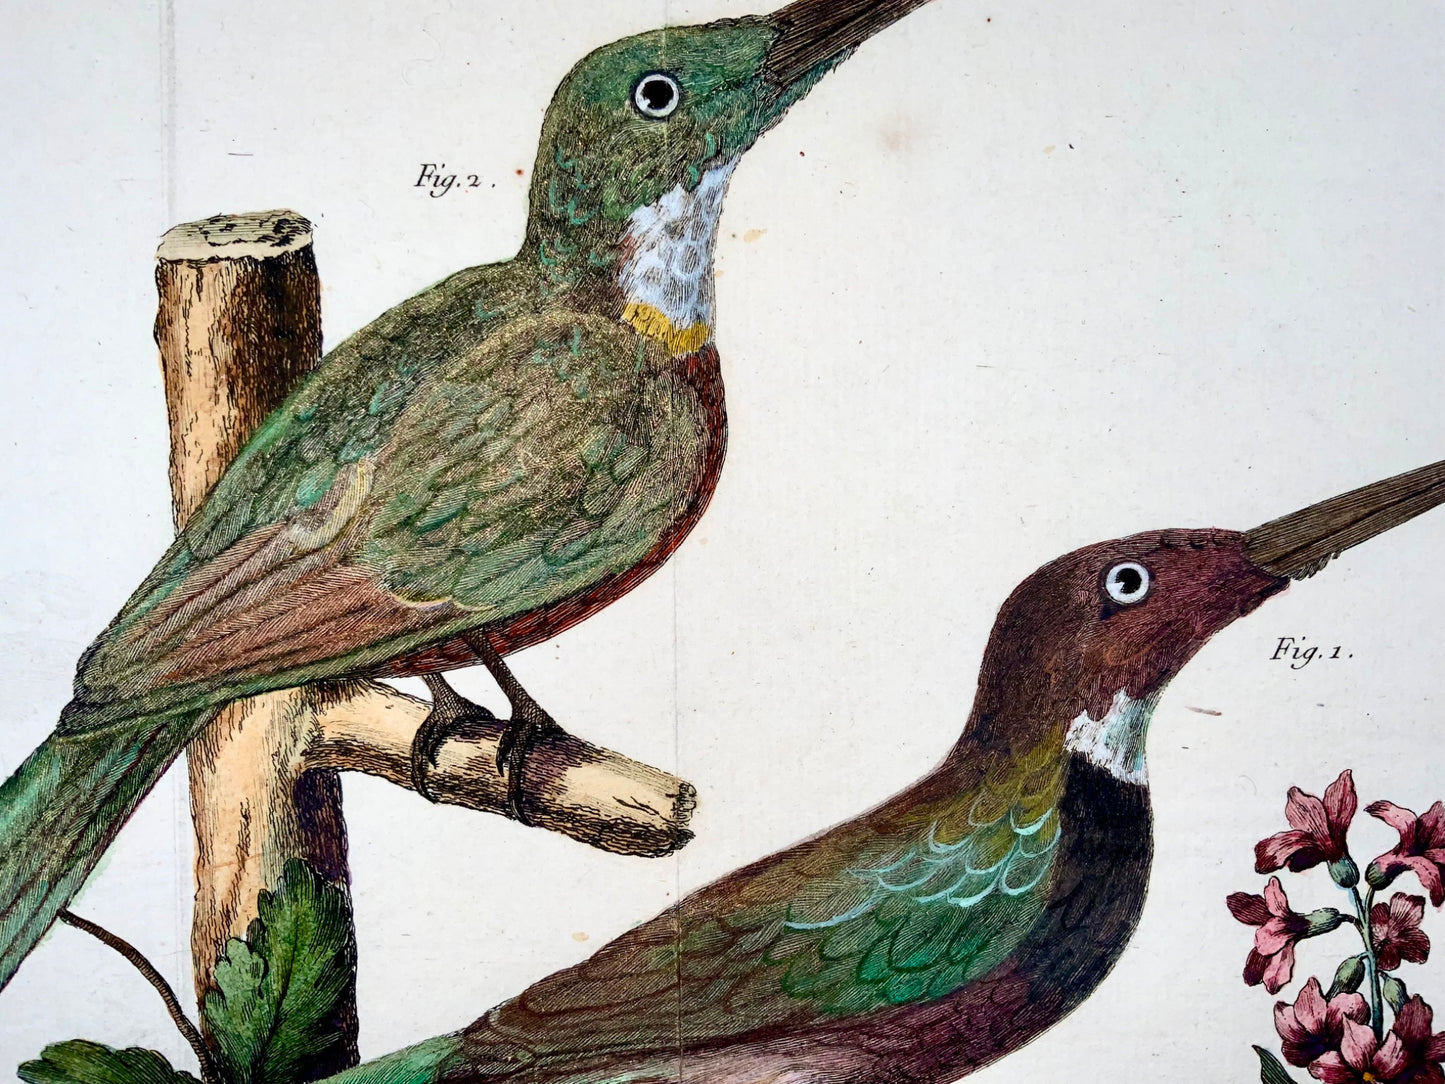 1760 Jacamars, Martinet (b1725), Brisson, colore a mano, ornitologia 